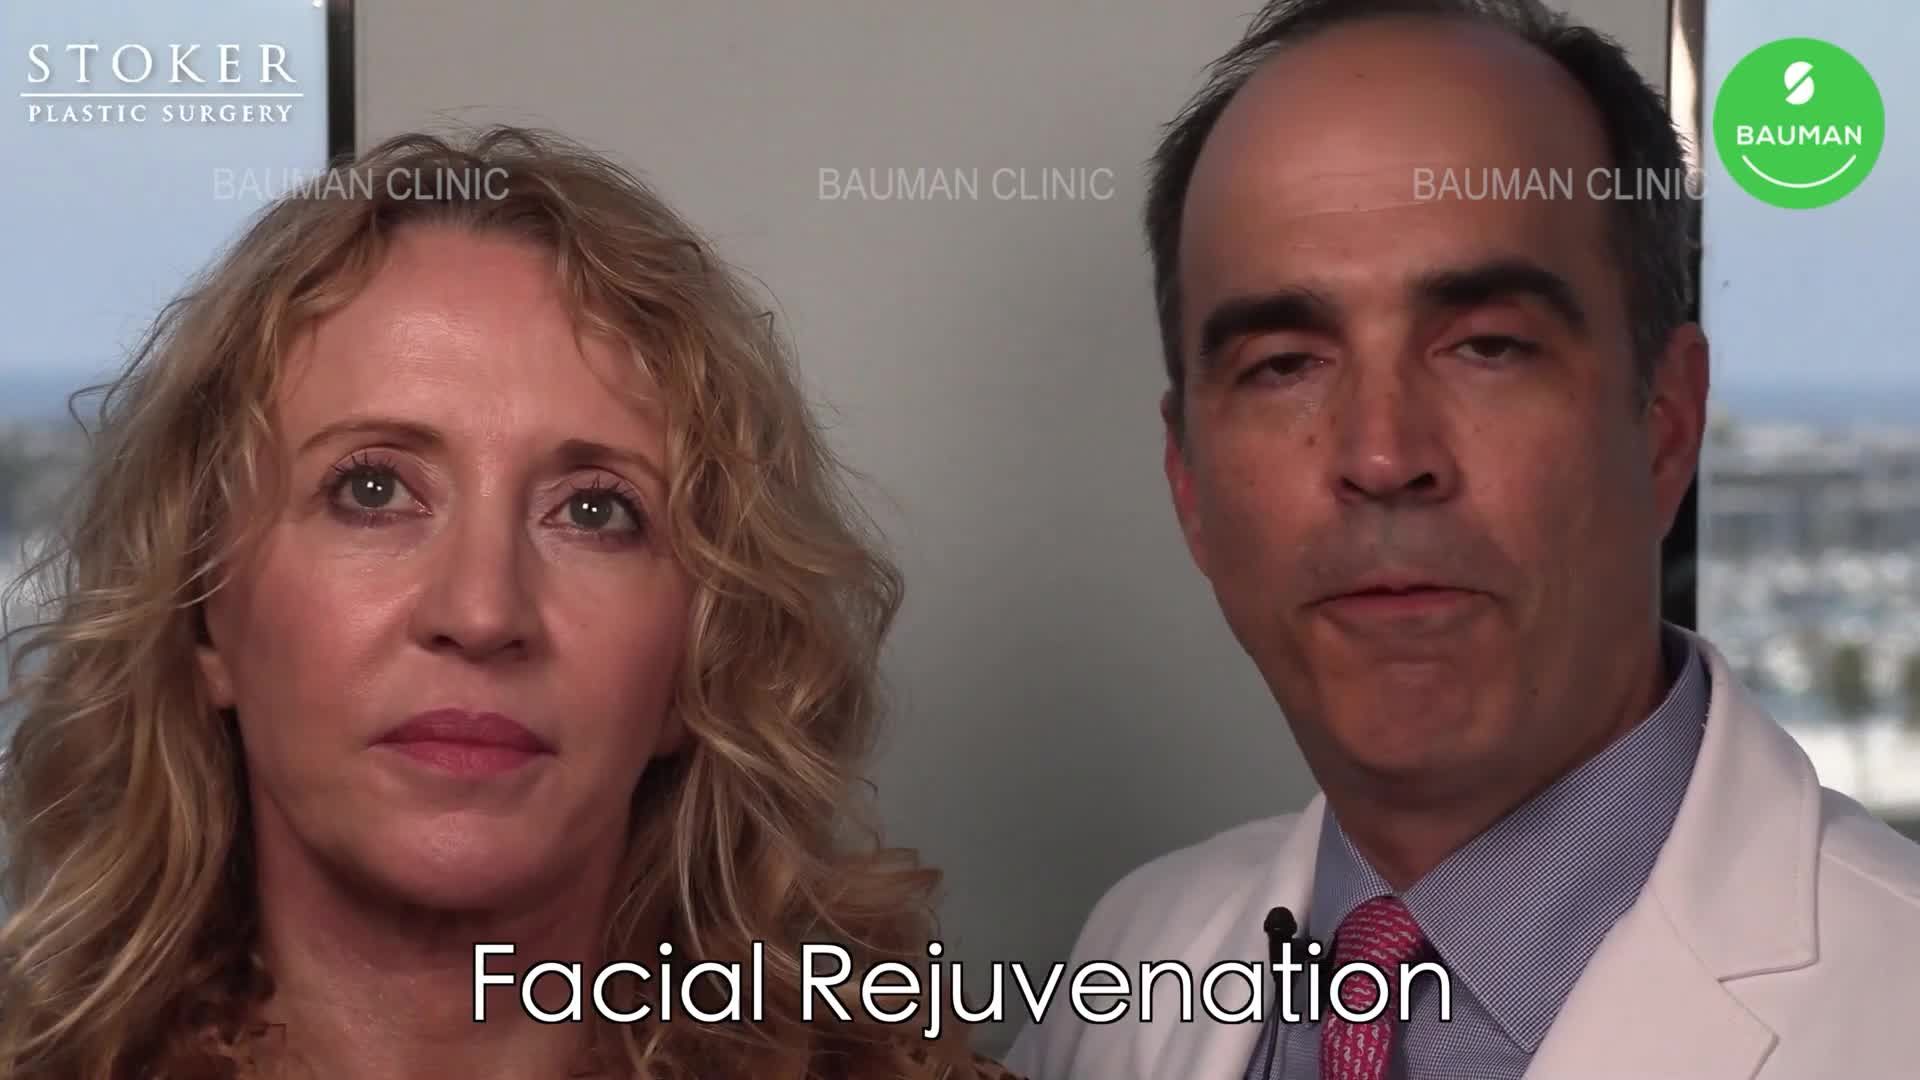 4 tháng sau độn cằm, căng da mặt cổ và tái tạo da bằng laser, nữ 50 tuổi